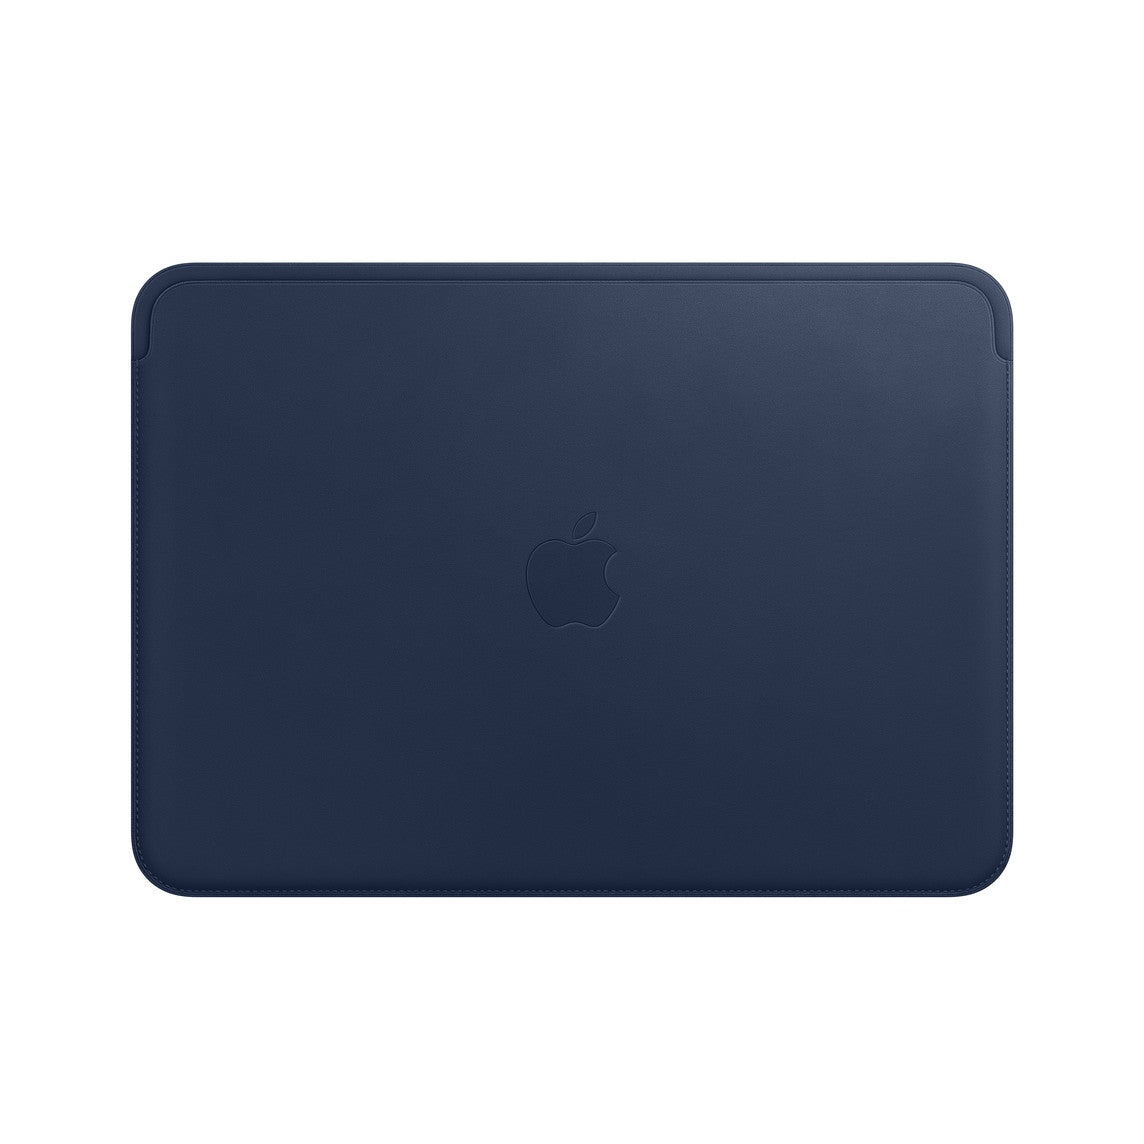 Apple MacBook 12 pouces housse en cuir - Bleu nuit